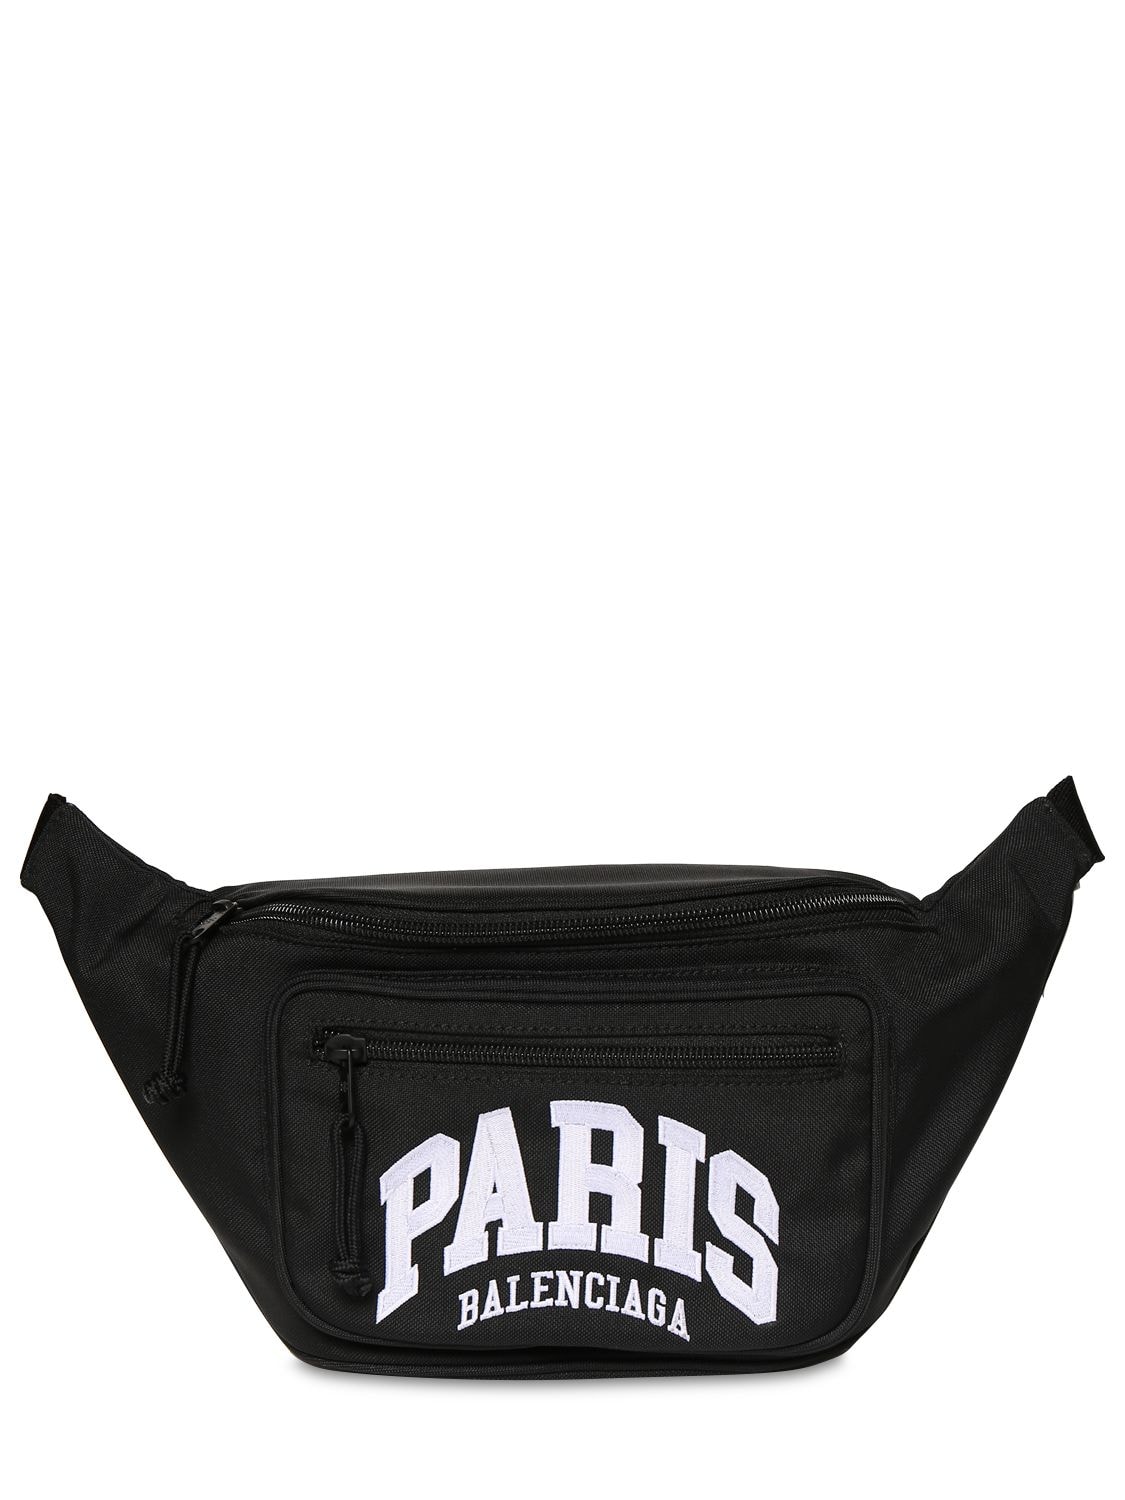 BALENCIAGA Belt Bags for Men | ModeSens